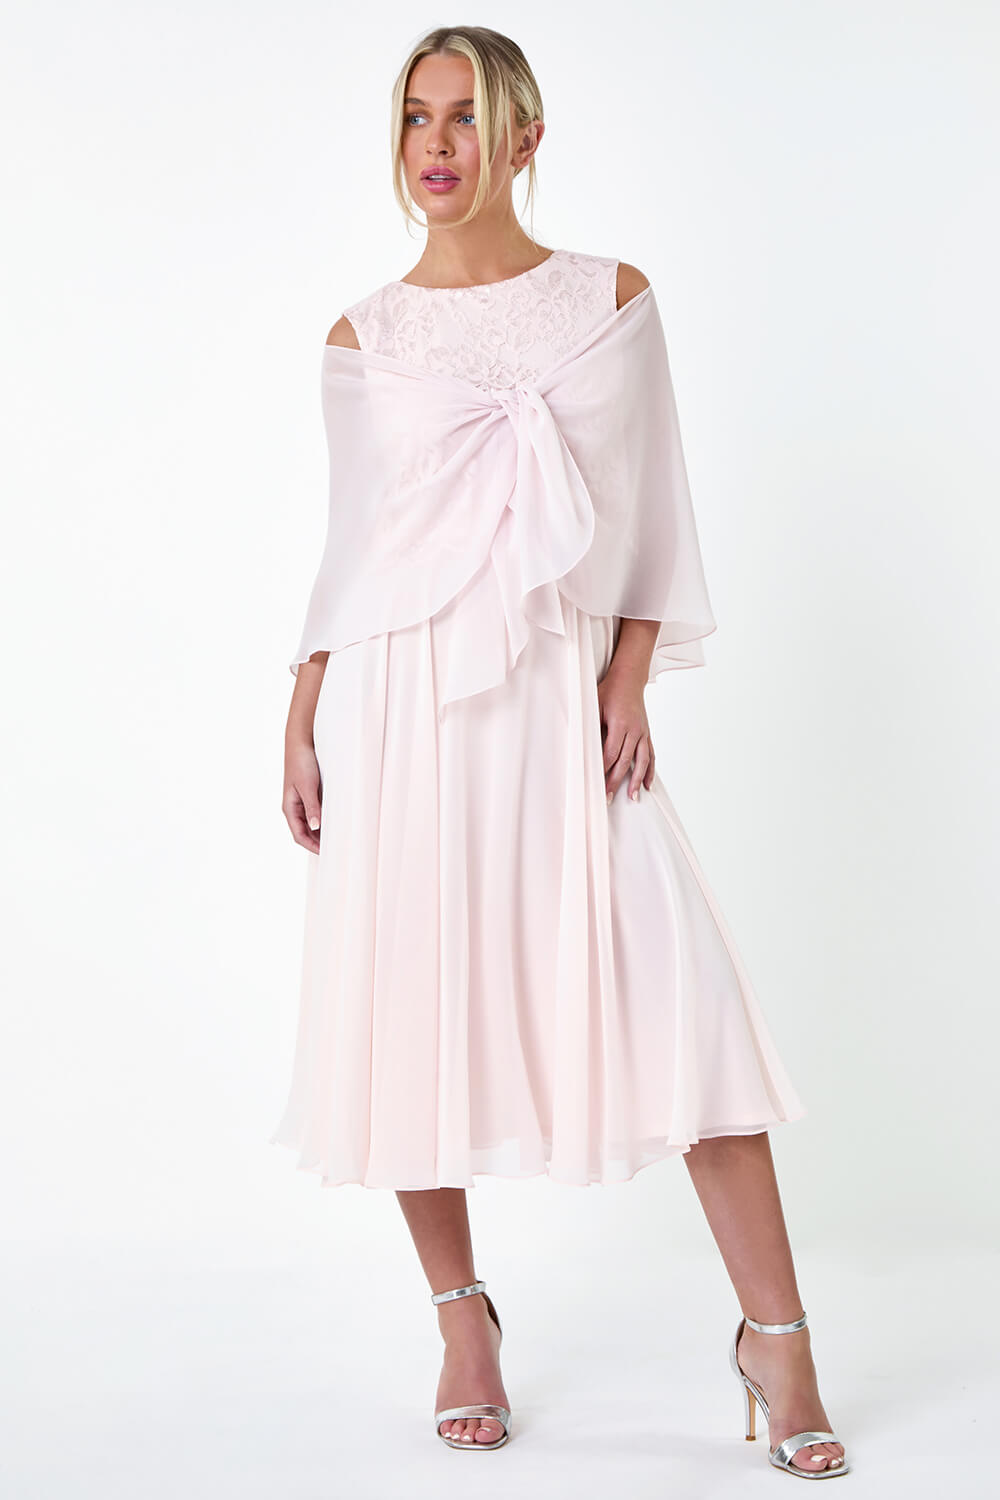 Light Pink Petite Chiffon Overlay Lace Midi Dress, Image 6 of 6